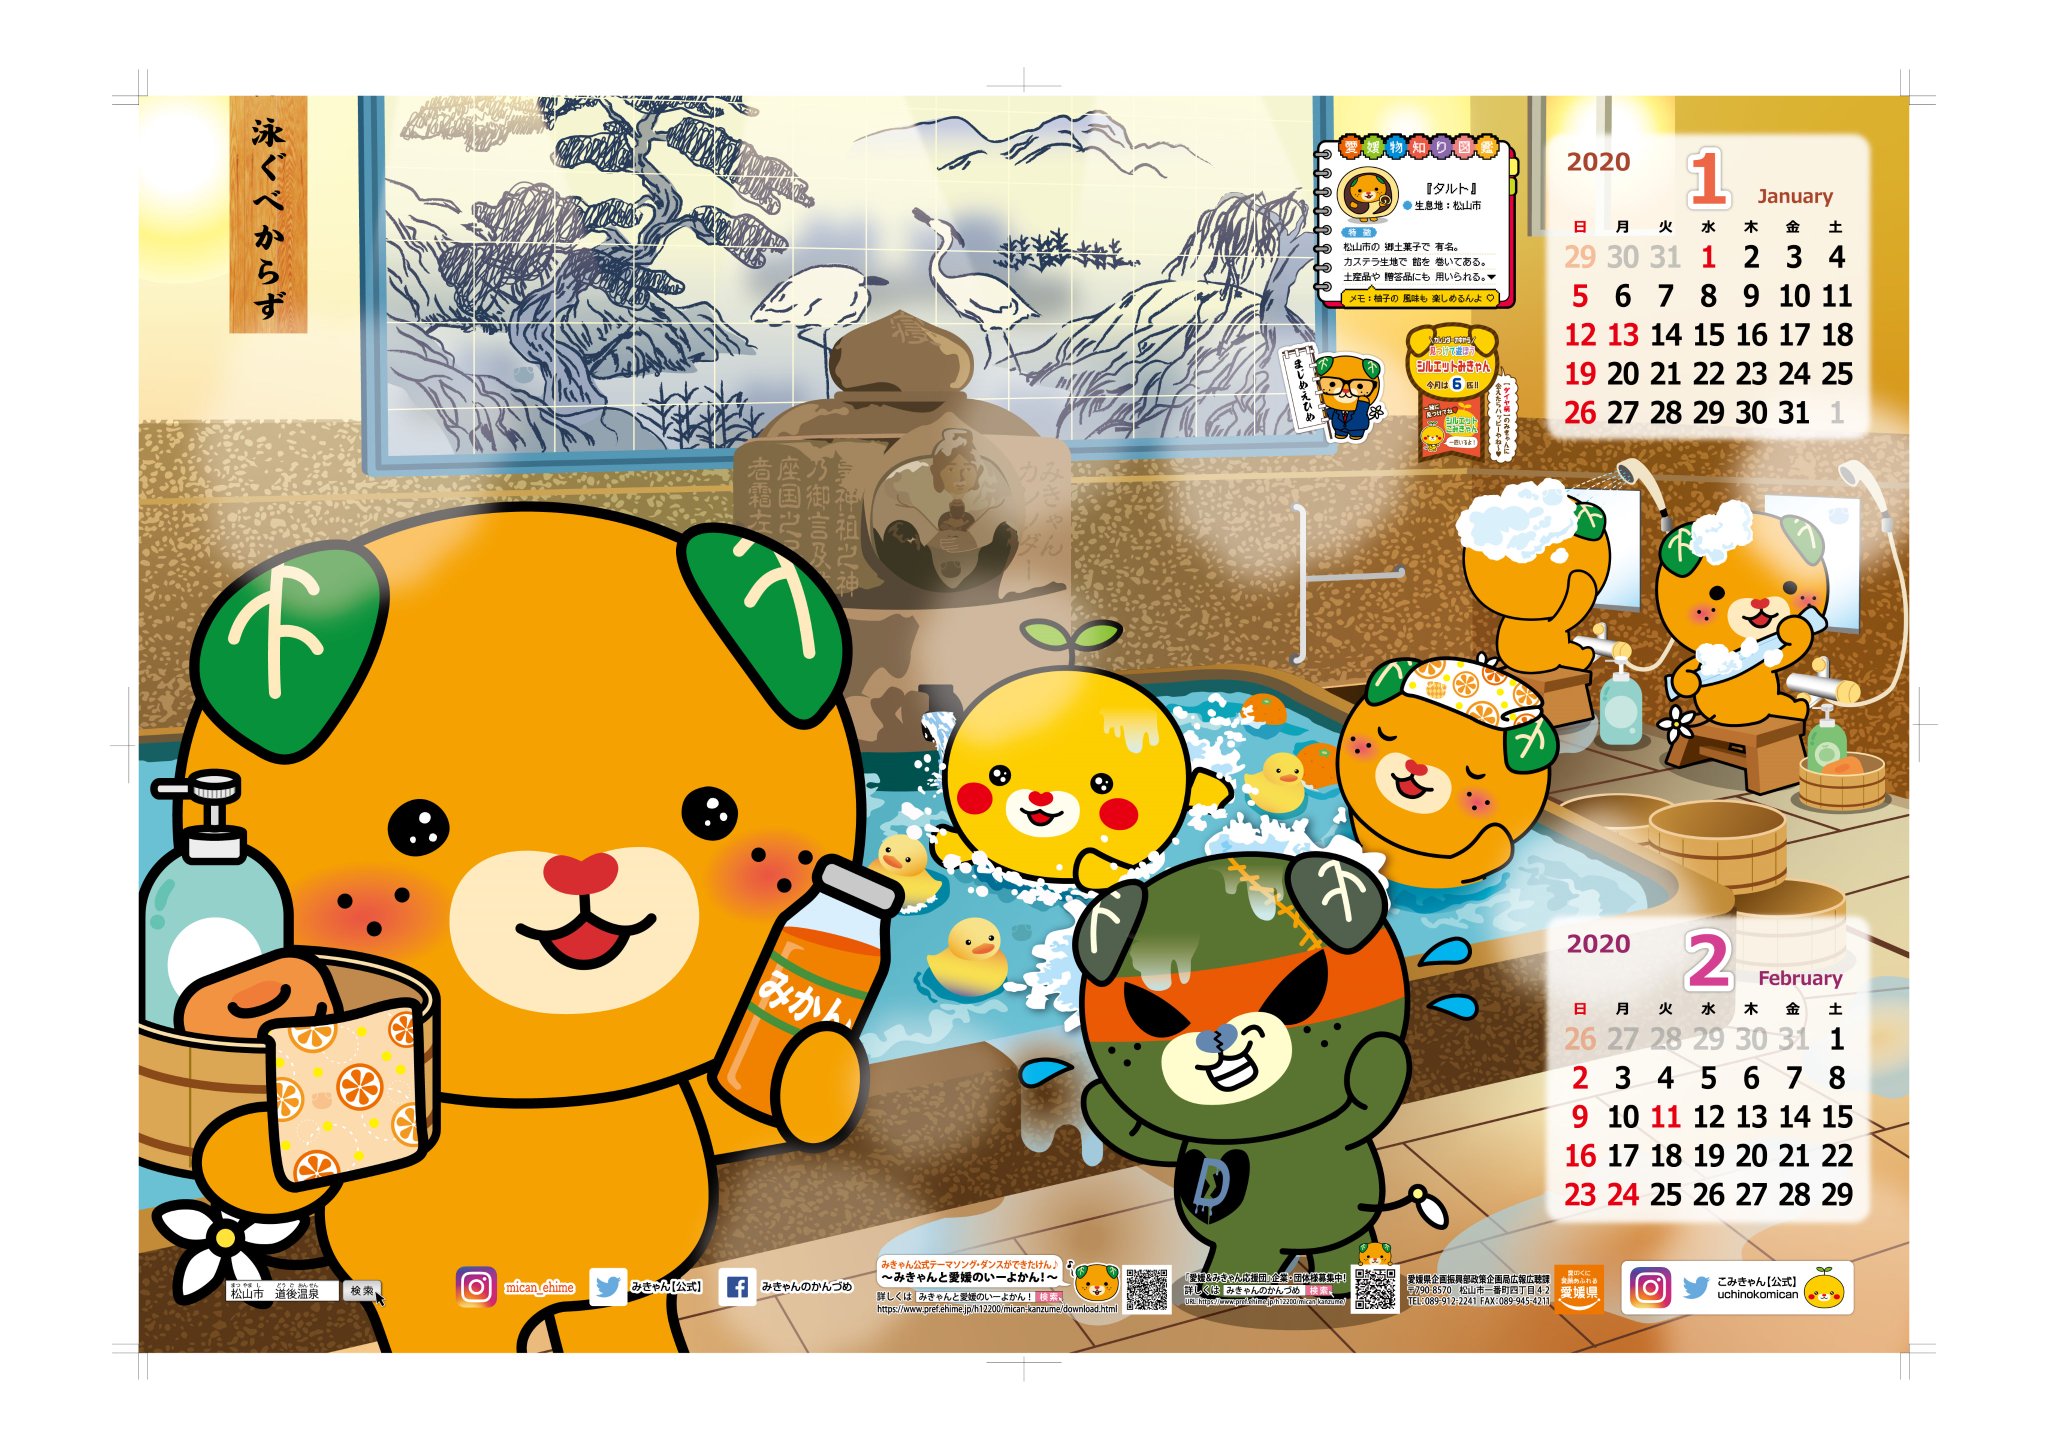 みきゃん 公式 愛媛県イメージアップキャラクター みきゃんカレンダー１ ２月号を紹介するけ ん 今回のテーマは 日本書紀 にも登場し 日本最古といわれる 道後温泉 カレンダーは県庁のみきゃんセンターなどで 無料で手に入るけん